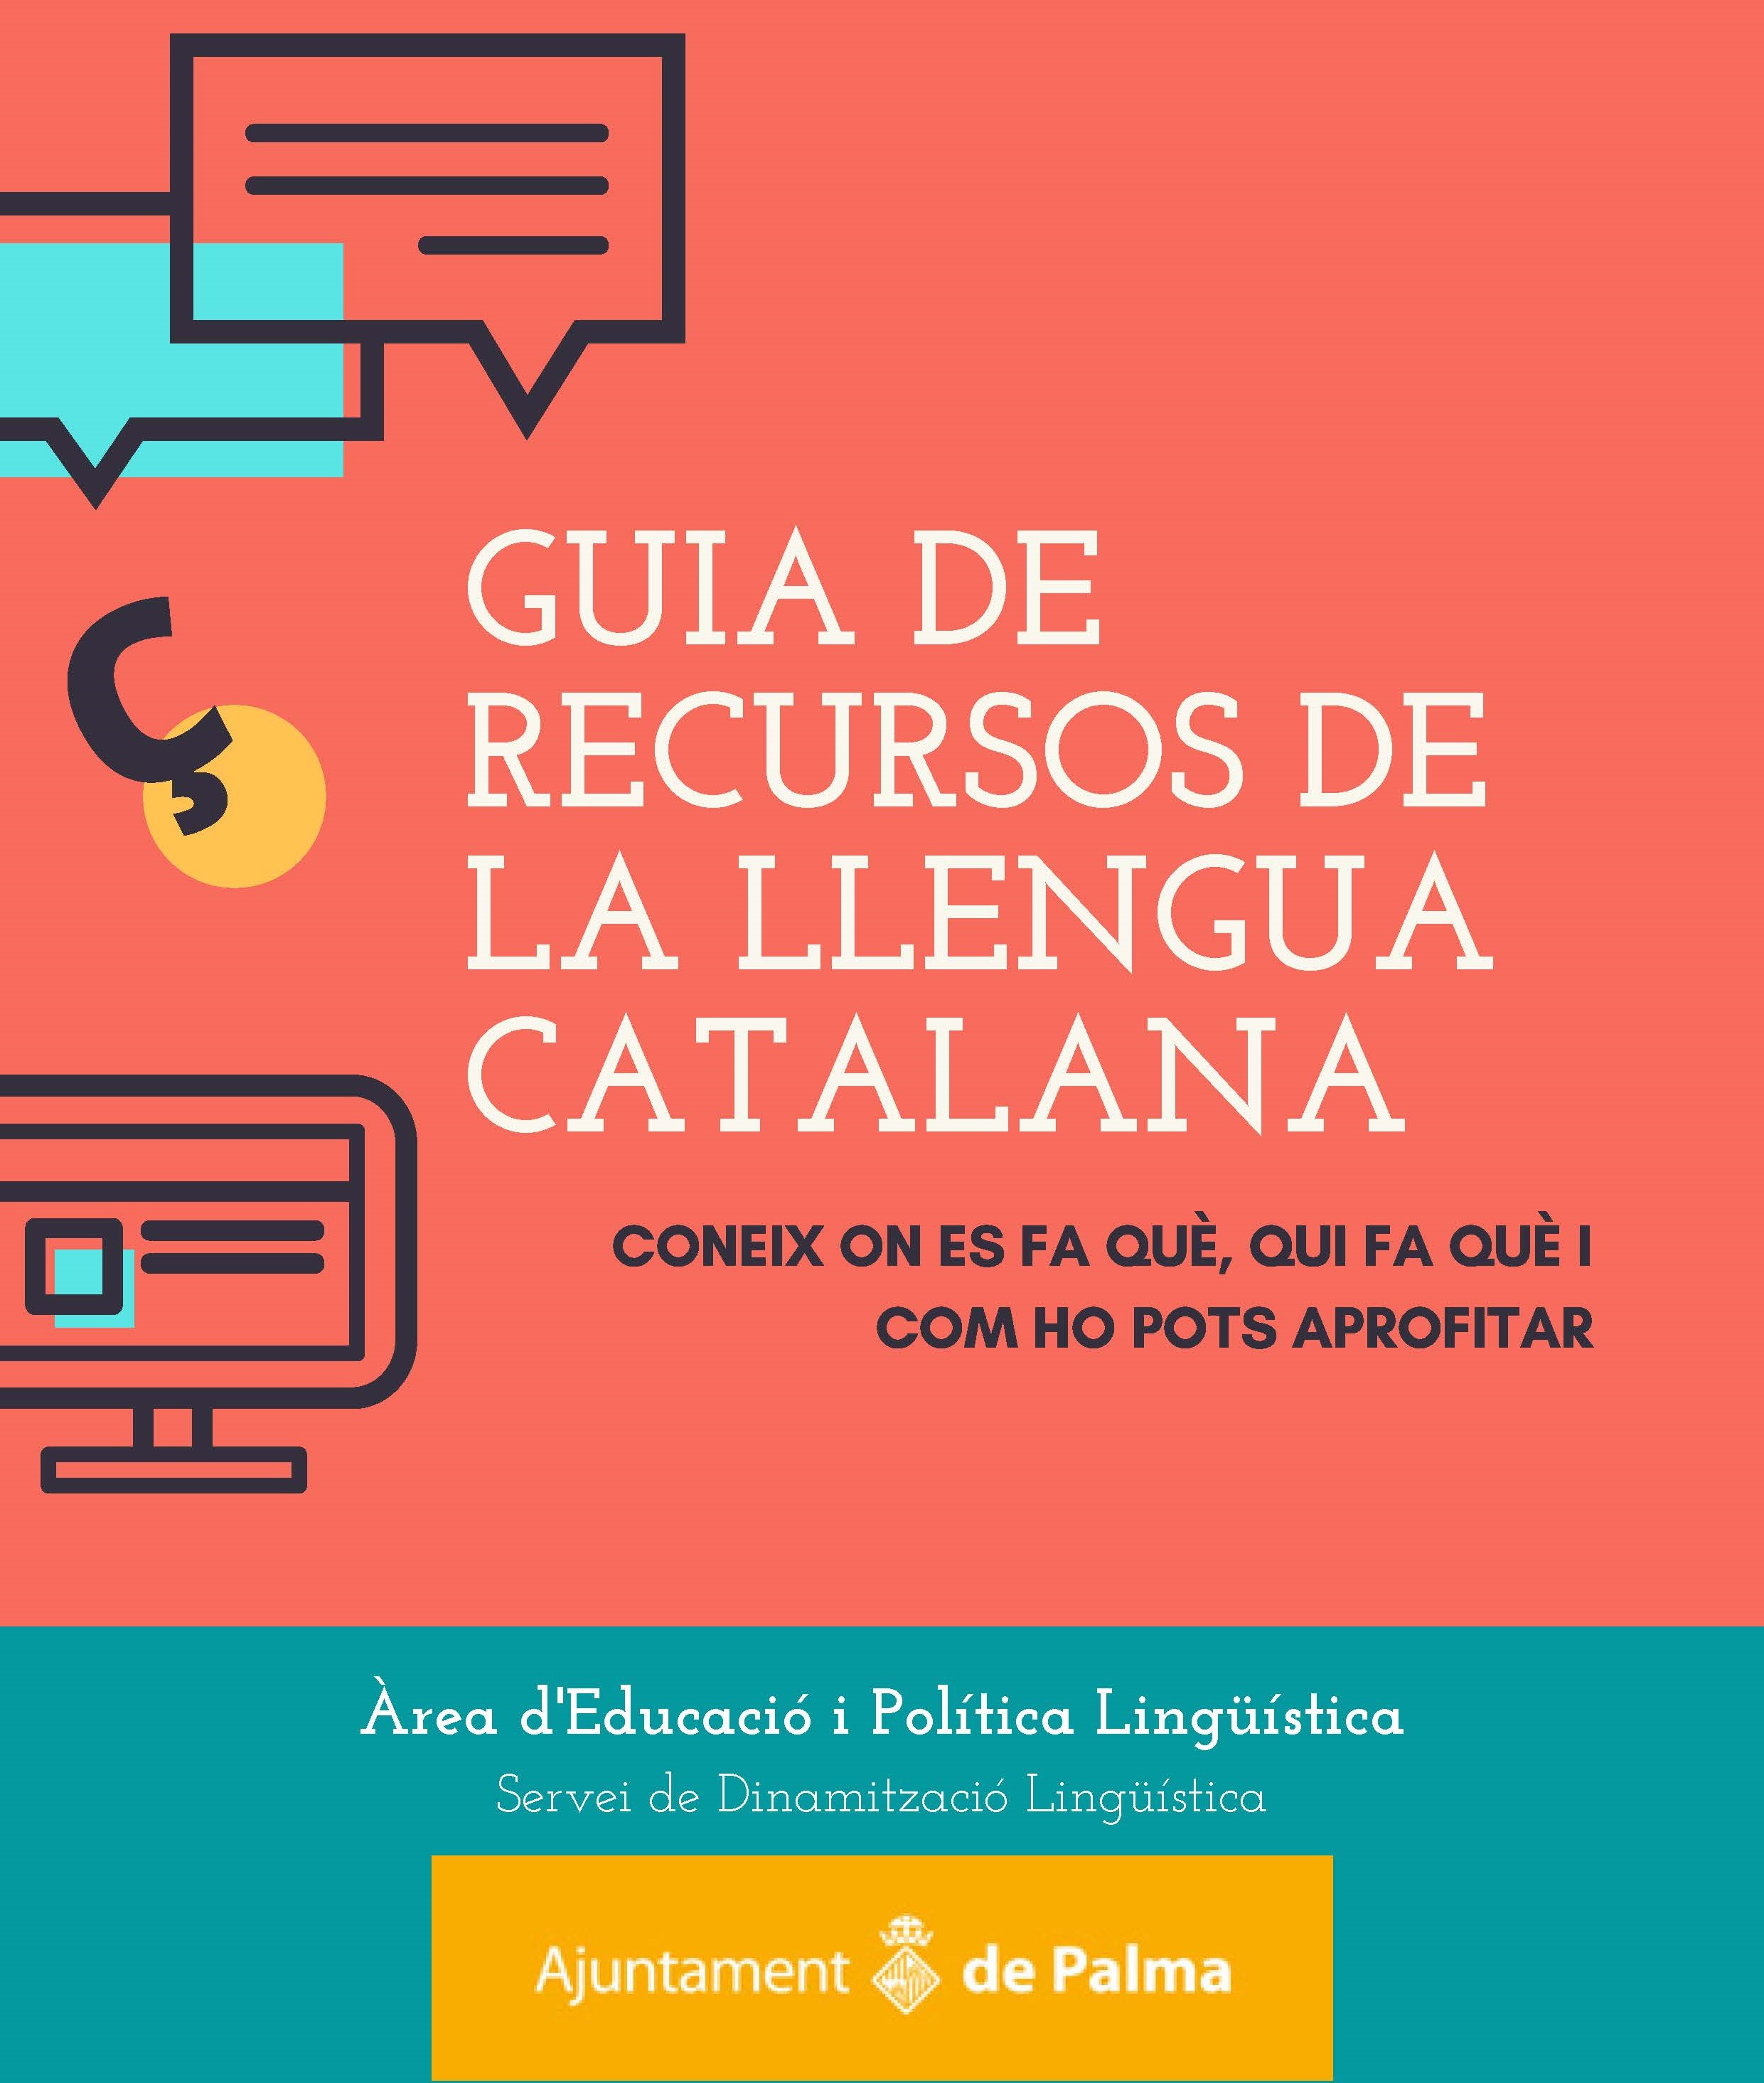 Guia recursos llengua catalana a Palma